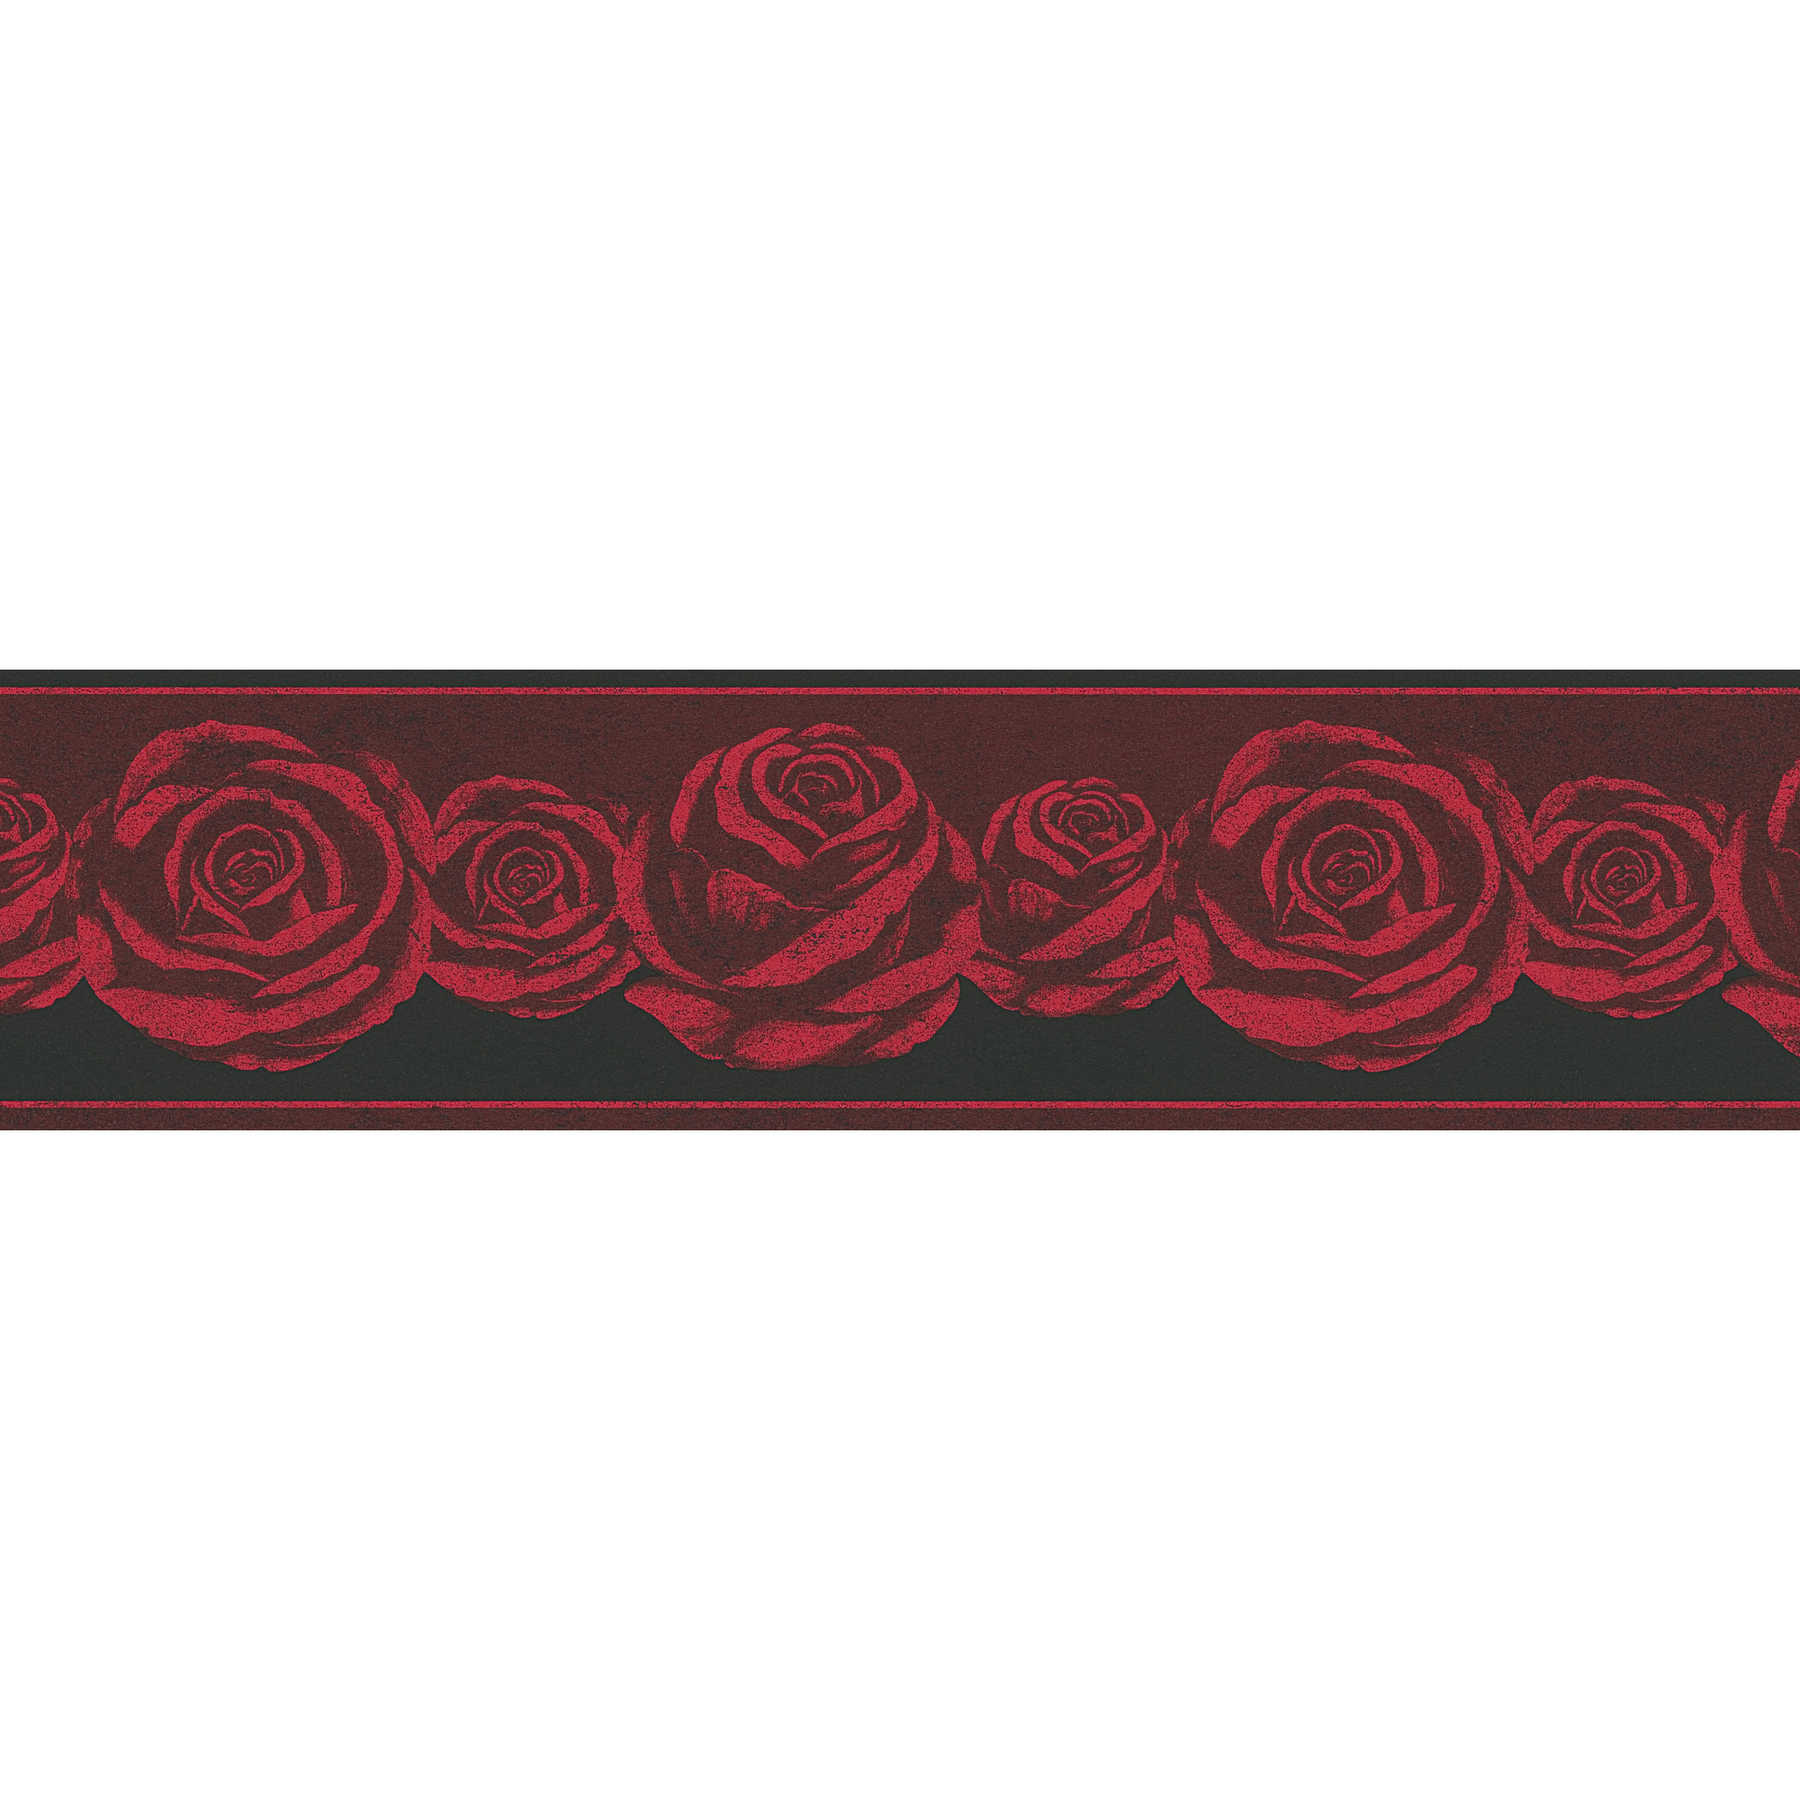 Tapetenbordüre Schwarz-Rot mit Rosen Muster
